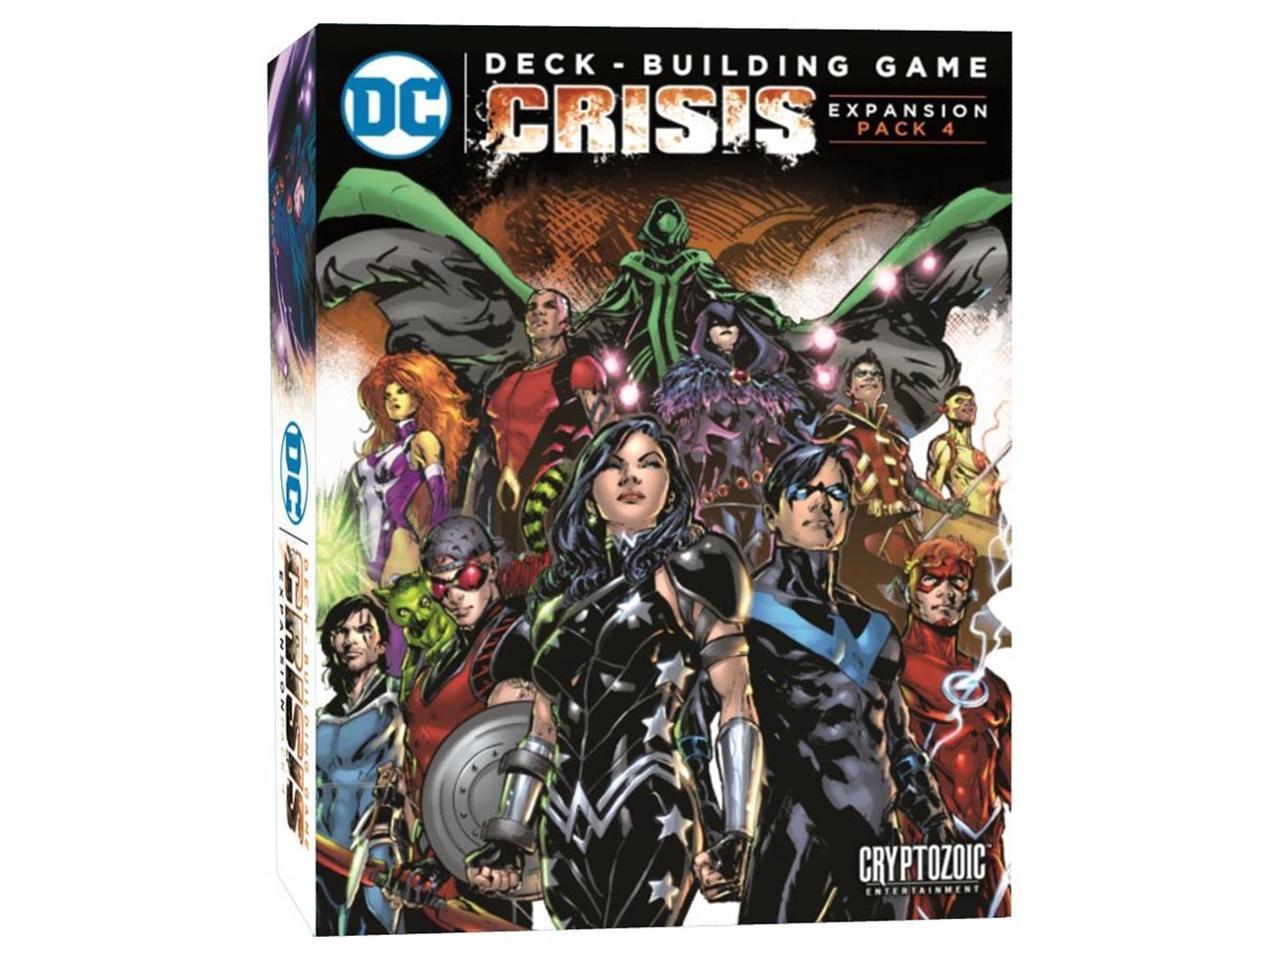 DC COMICS DECK-BUILDING GAME: CRISIS EXPANSION PACK 4 | Dark Ninja Gaming LA